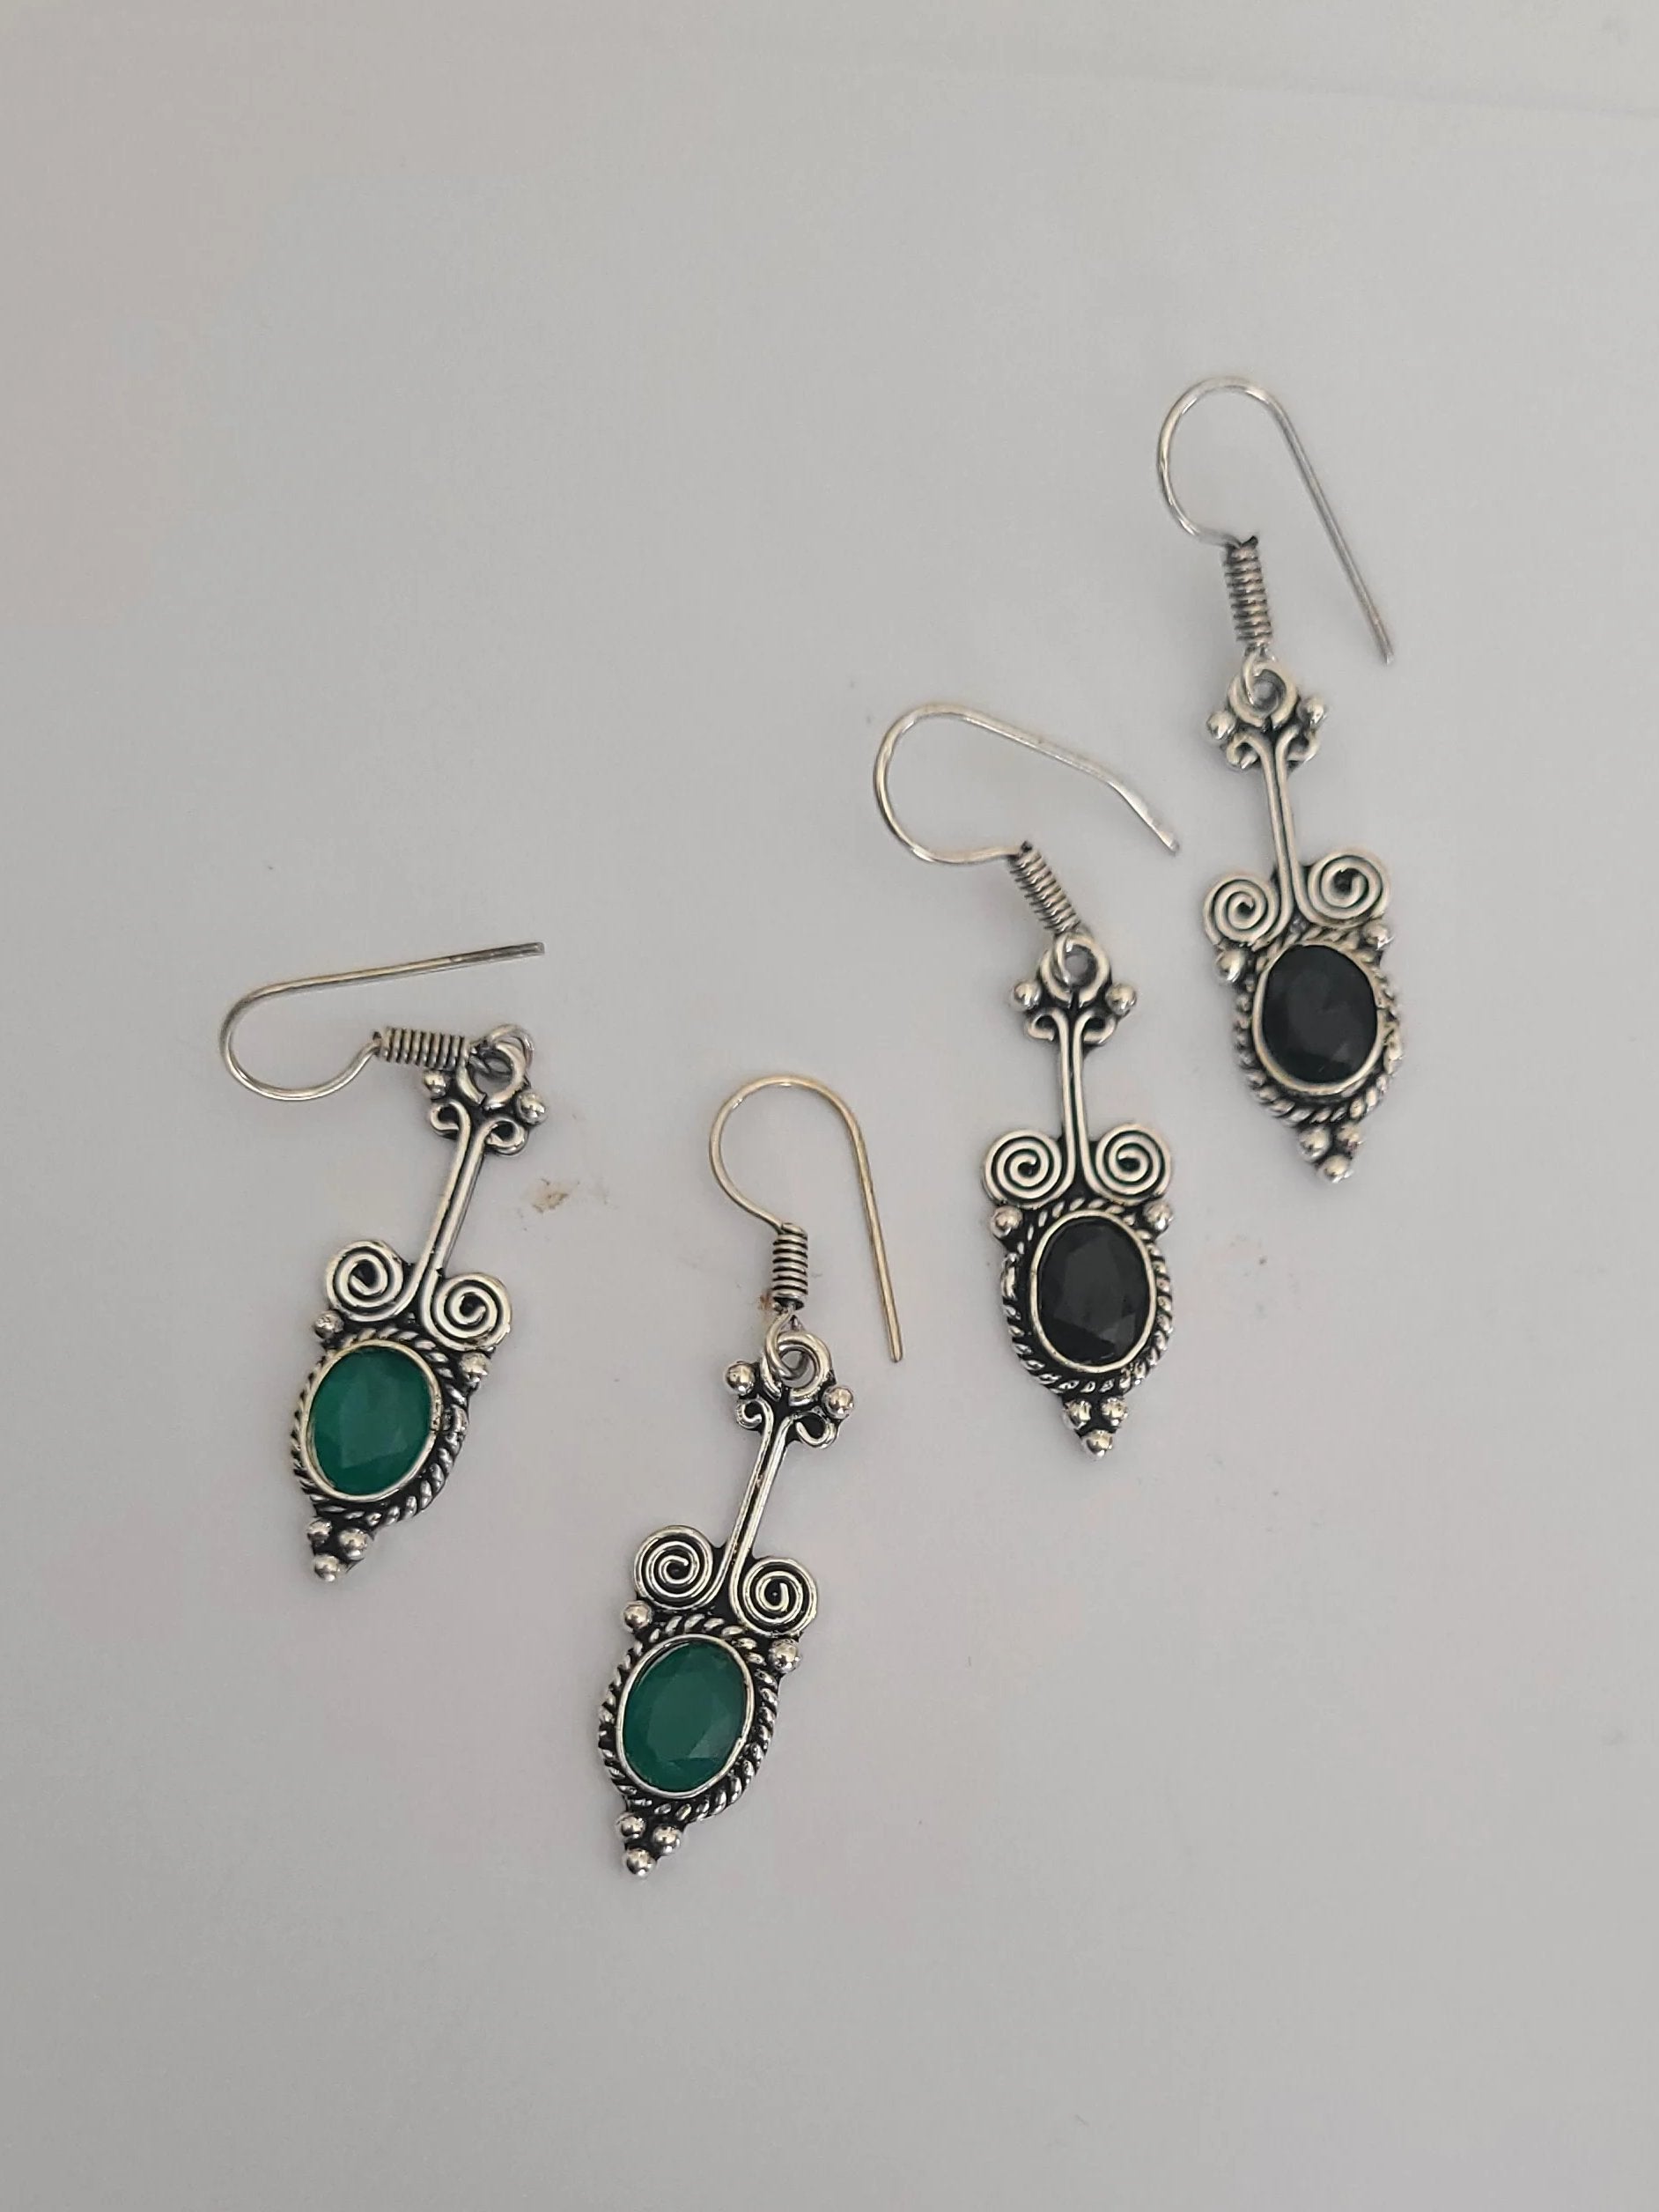 Small hook earrings